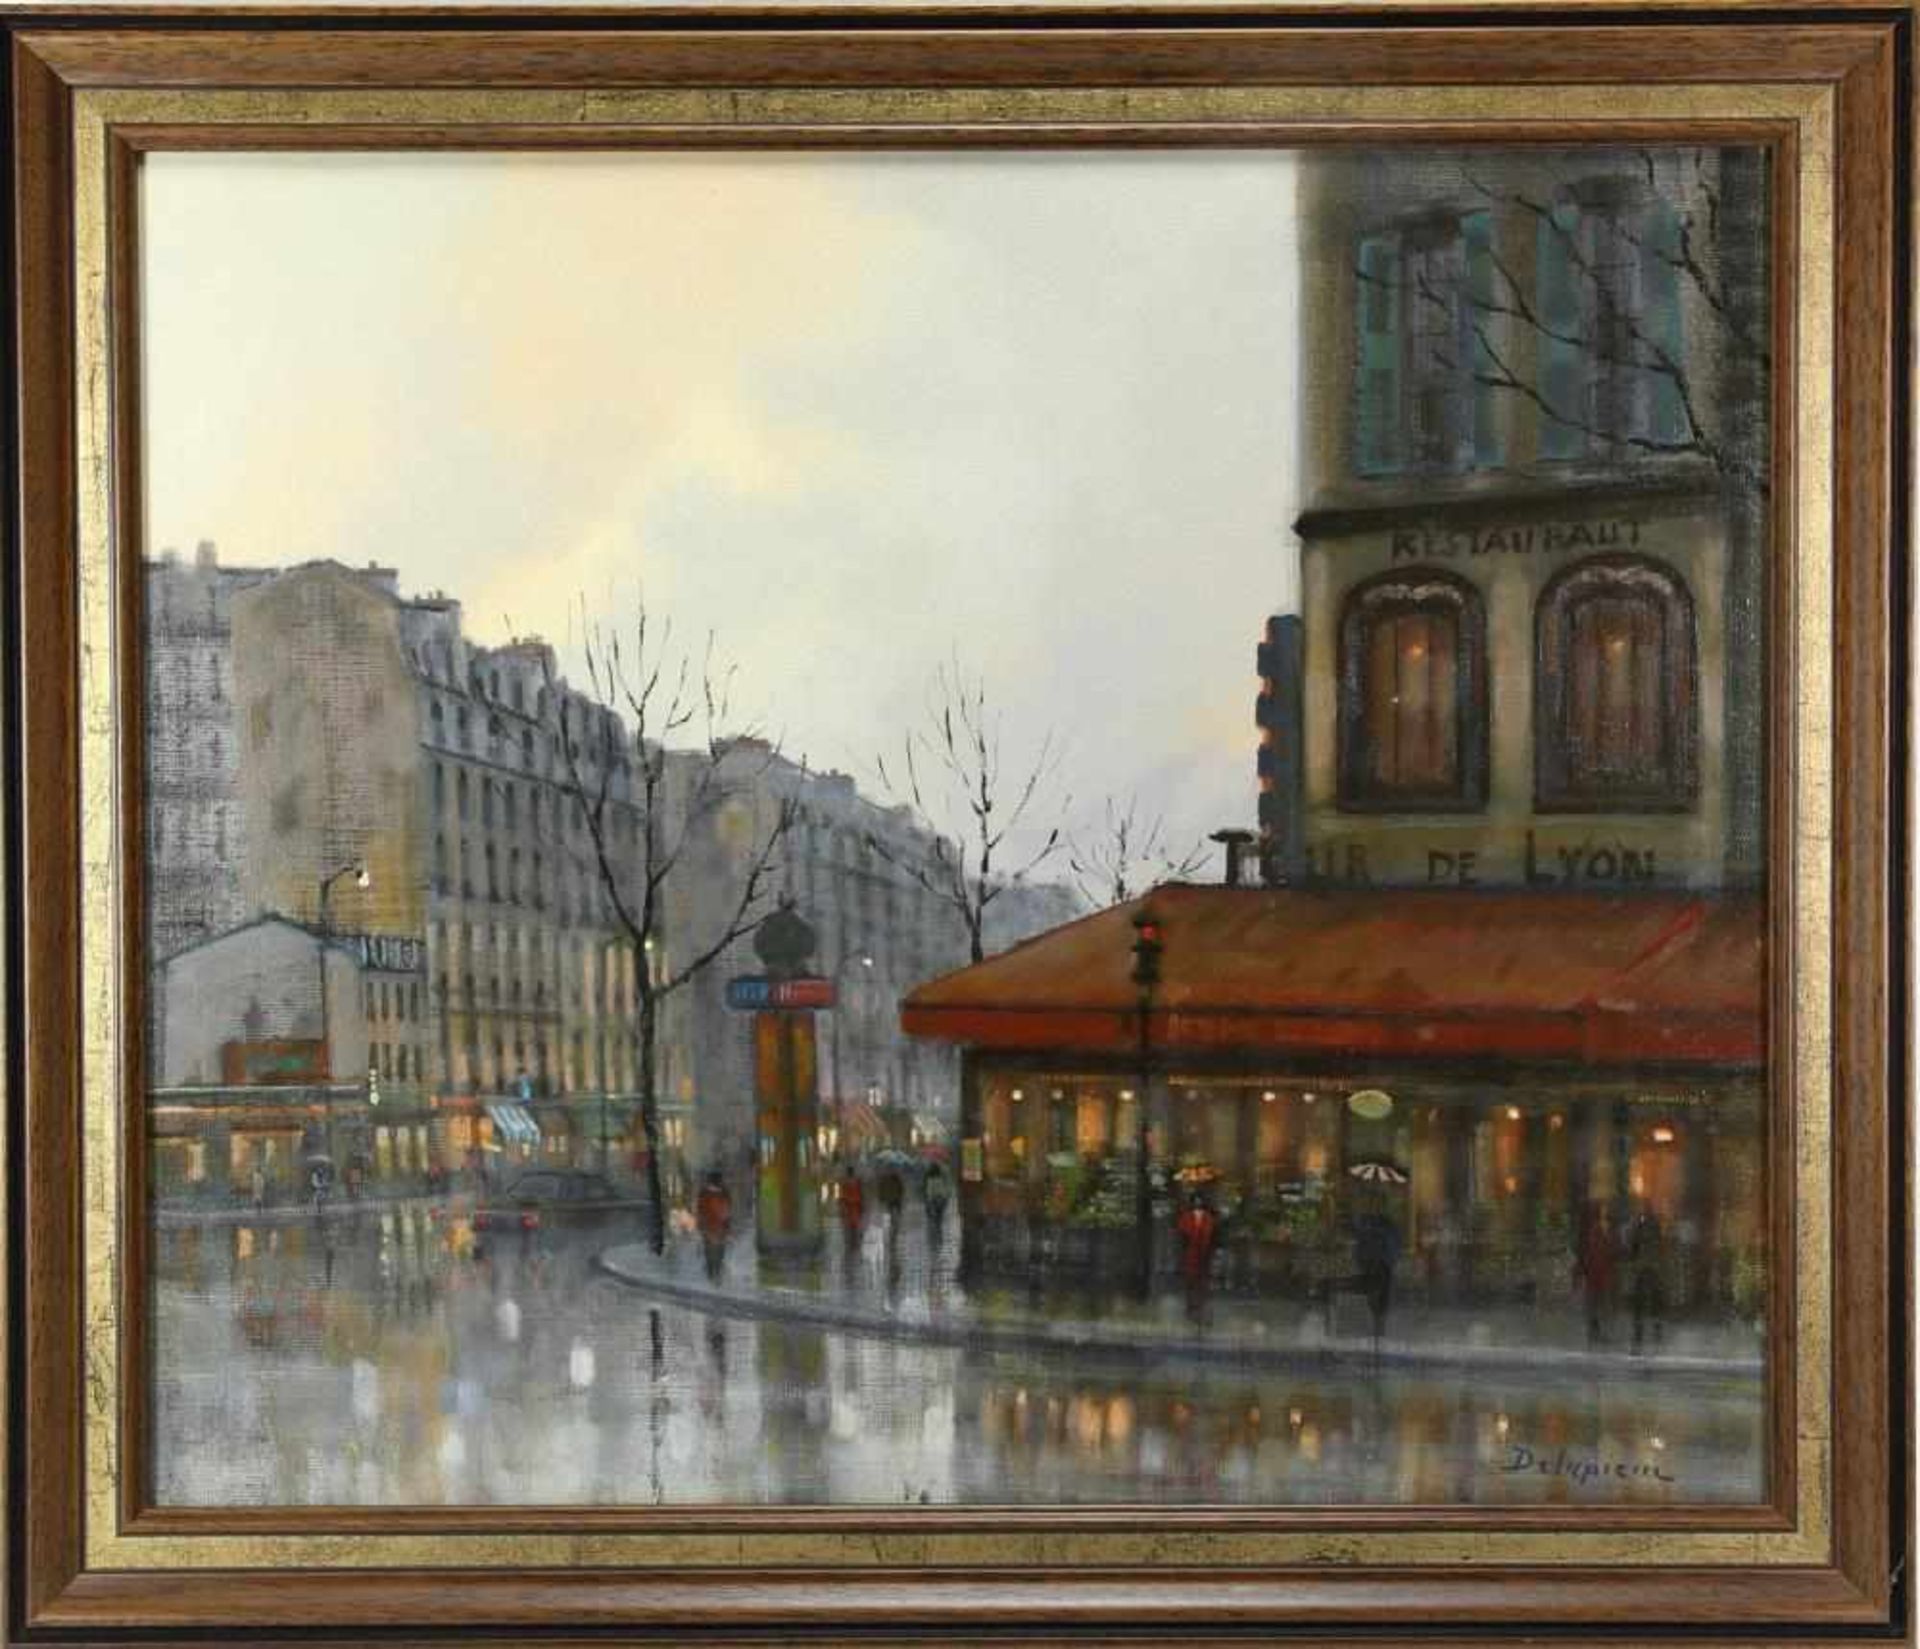 Delapierre, Roger * 1935 Genf. Blick auf das Restaurant Gare de Lyon in Paris. Öl auf Leinwand. - Bild 2 aus 3